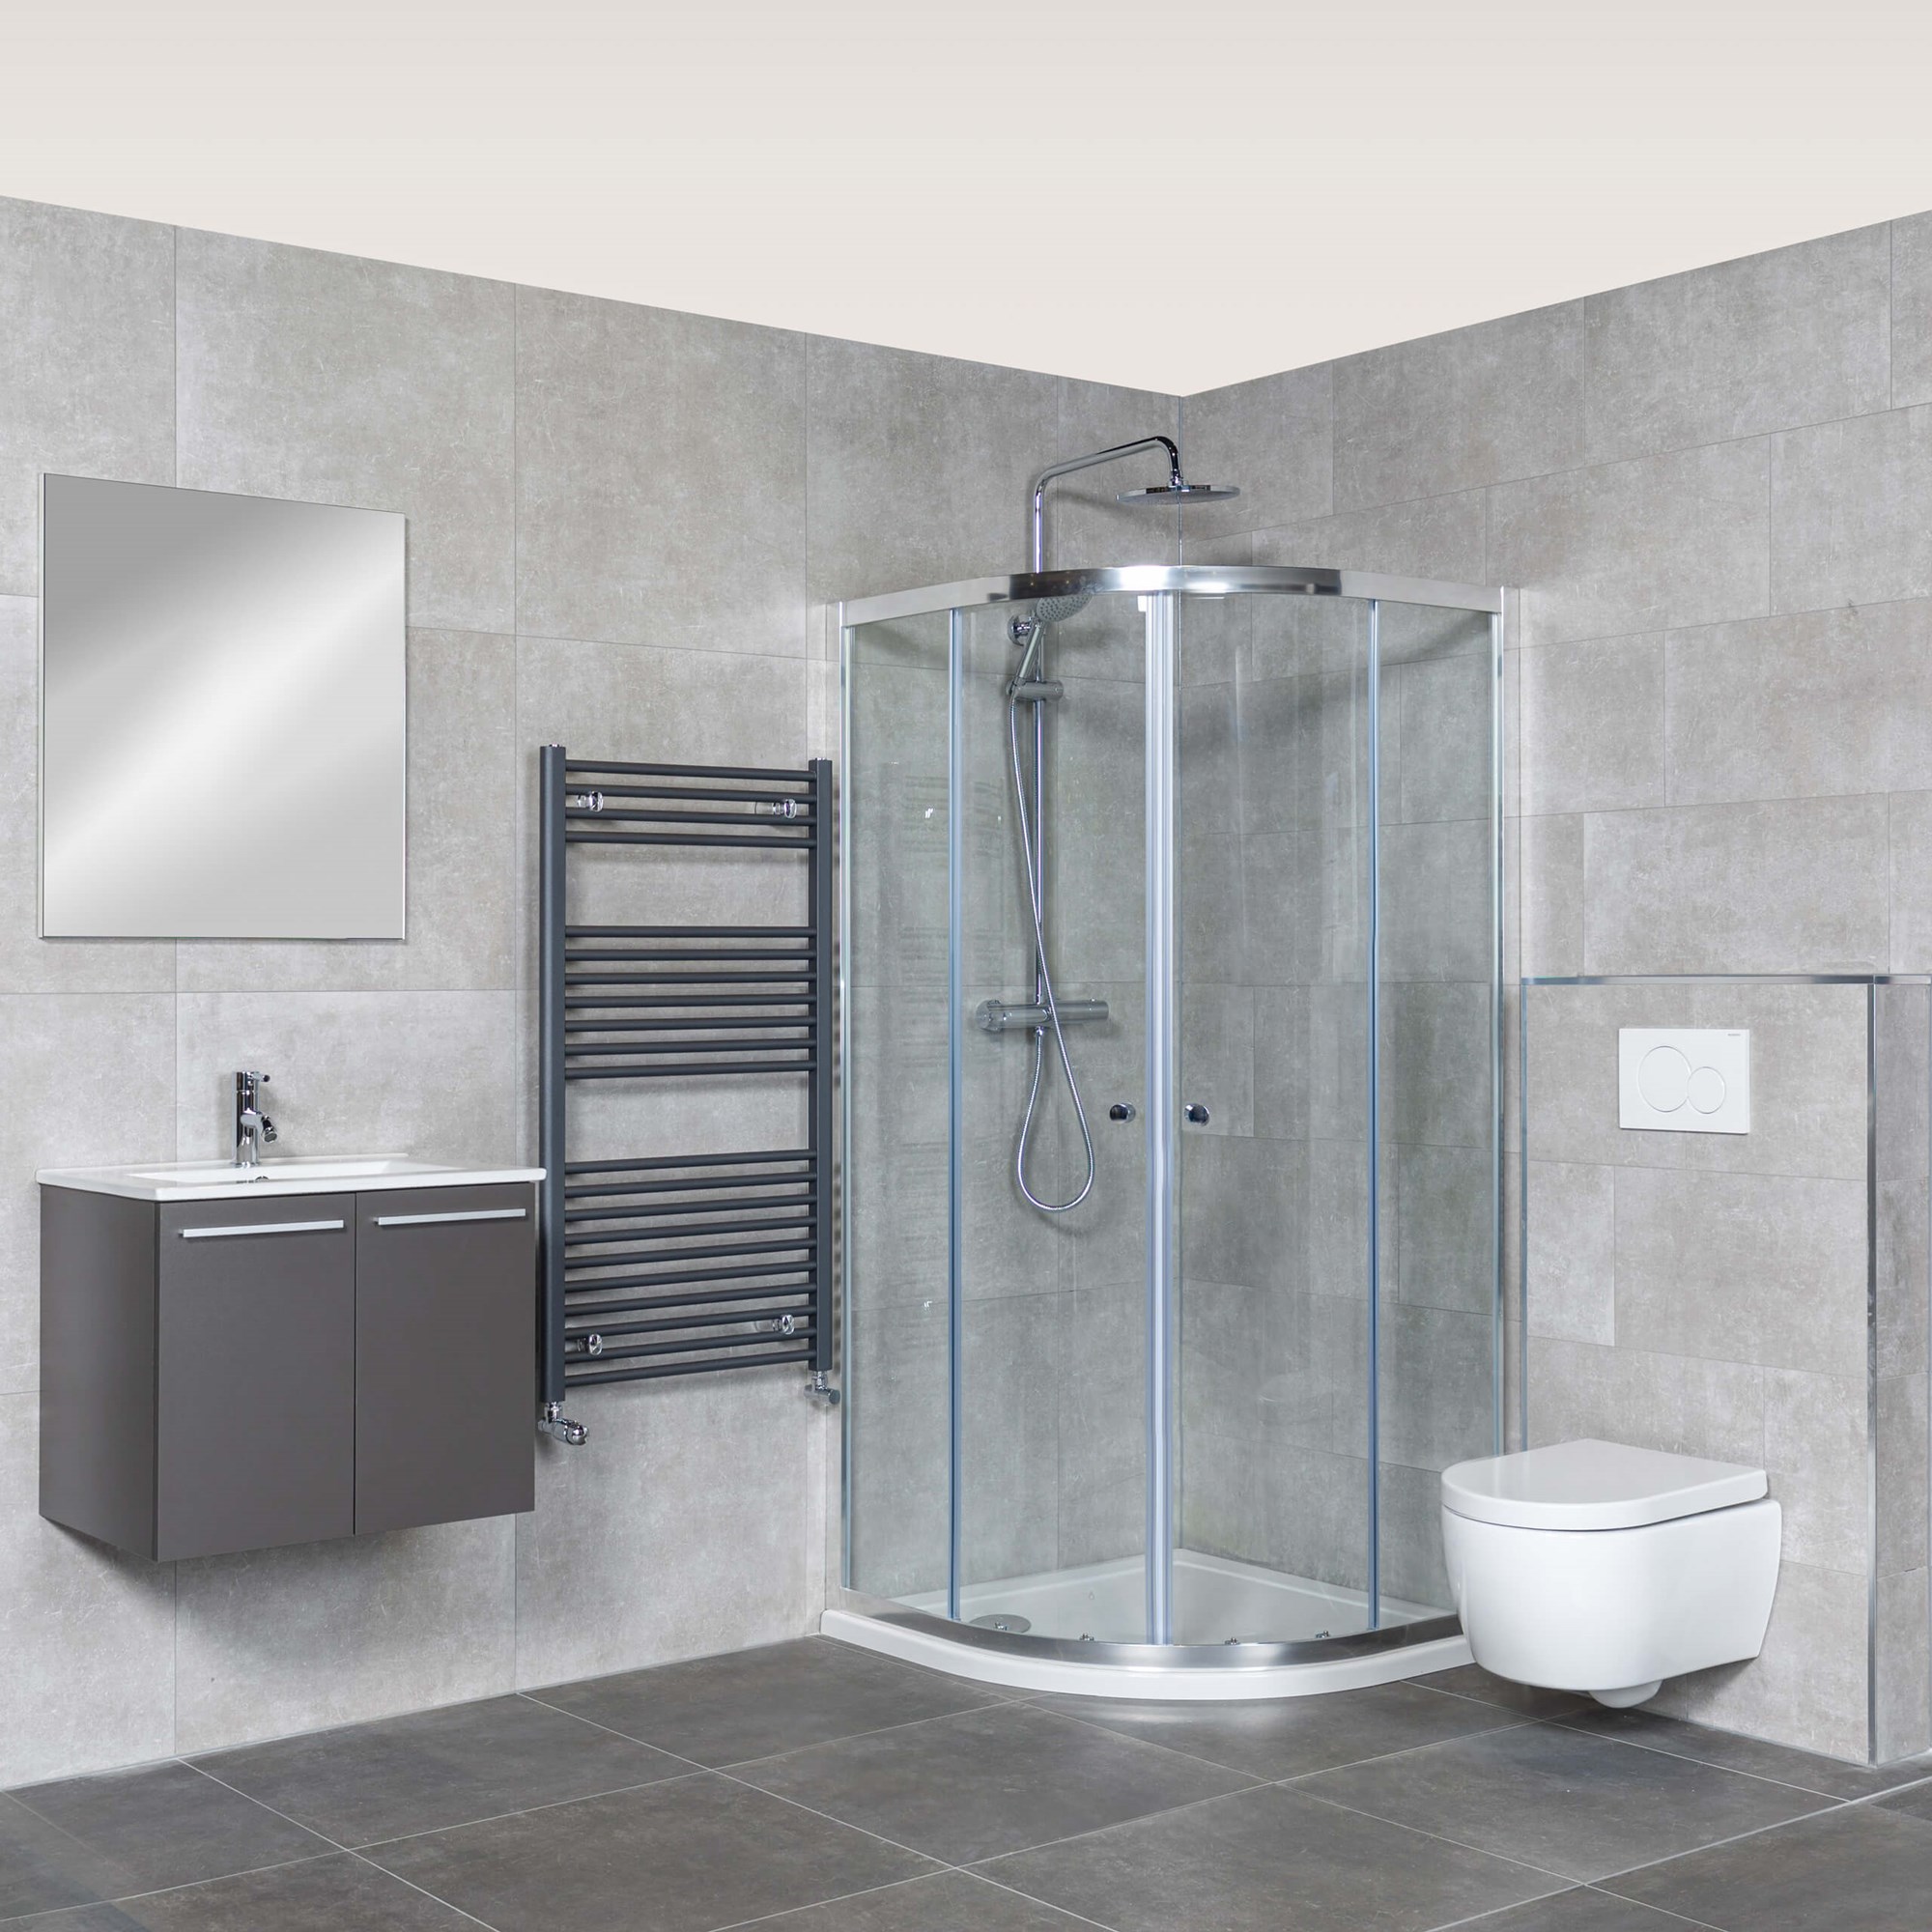 Leugen Gehuurd Plotselinge afdaling Budgetproof badkamer: een nieuwe badkamer voor slechts € 1.700! | Maxaro